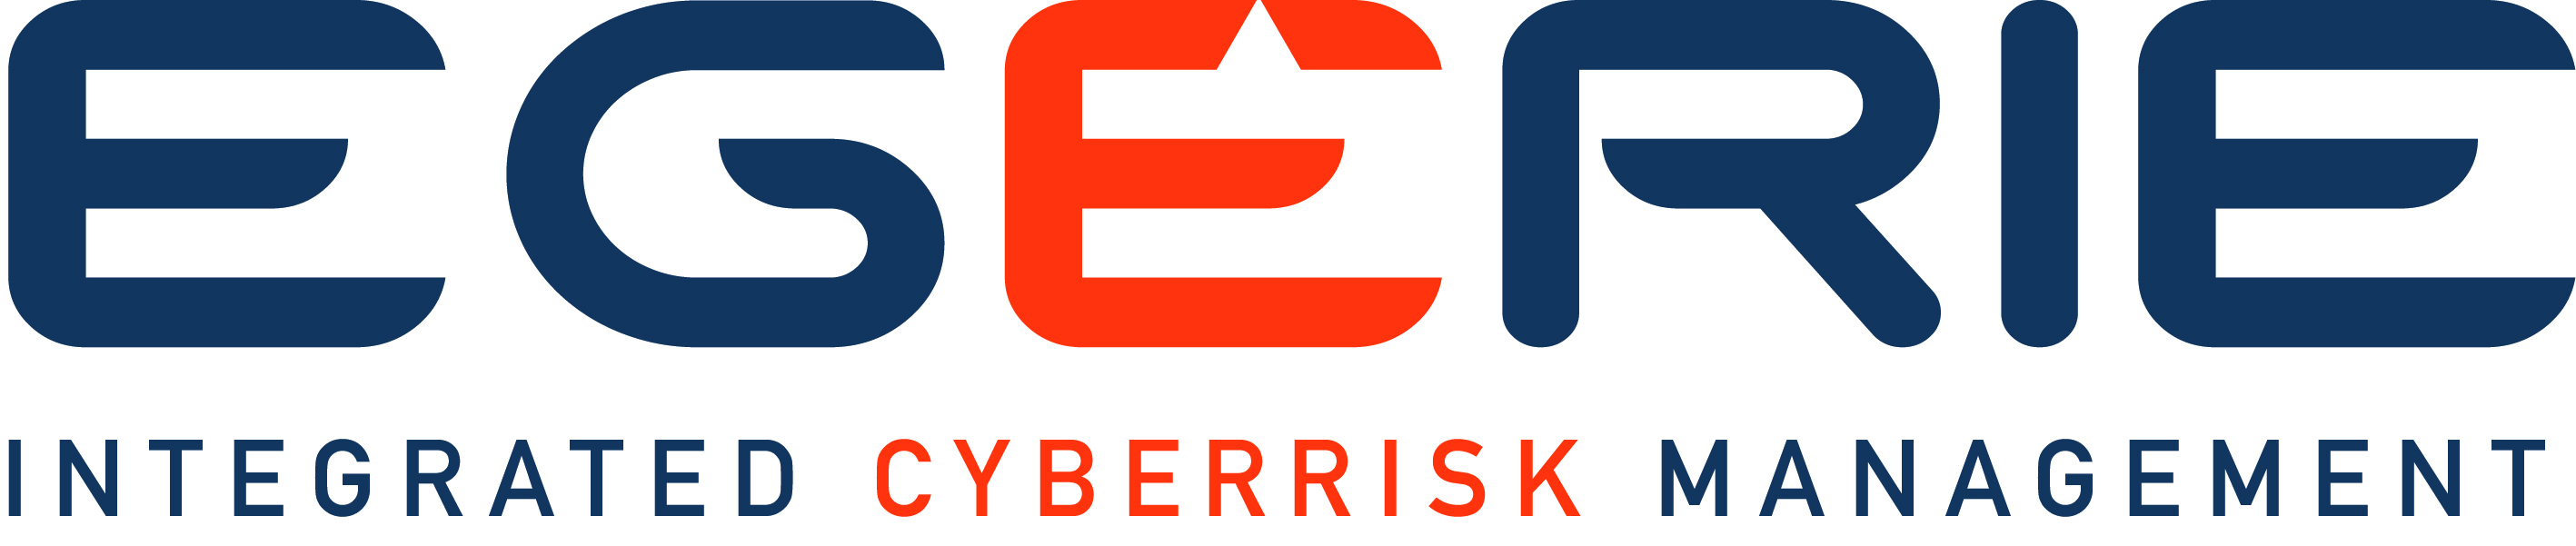 EGERIE Risk Manager software platform providing cyberrisk management. 